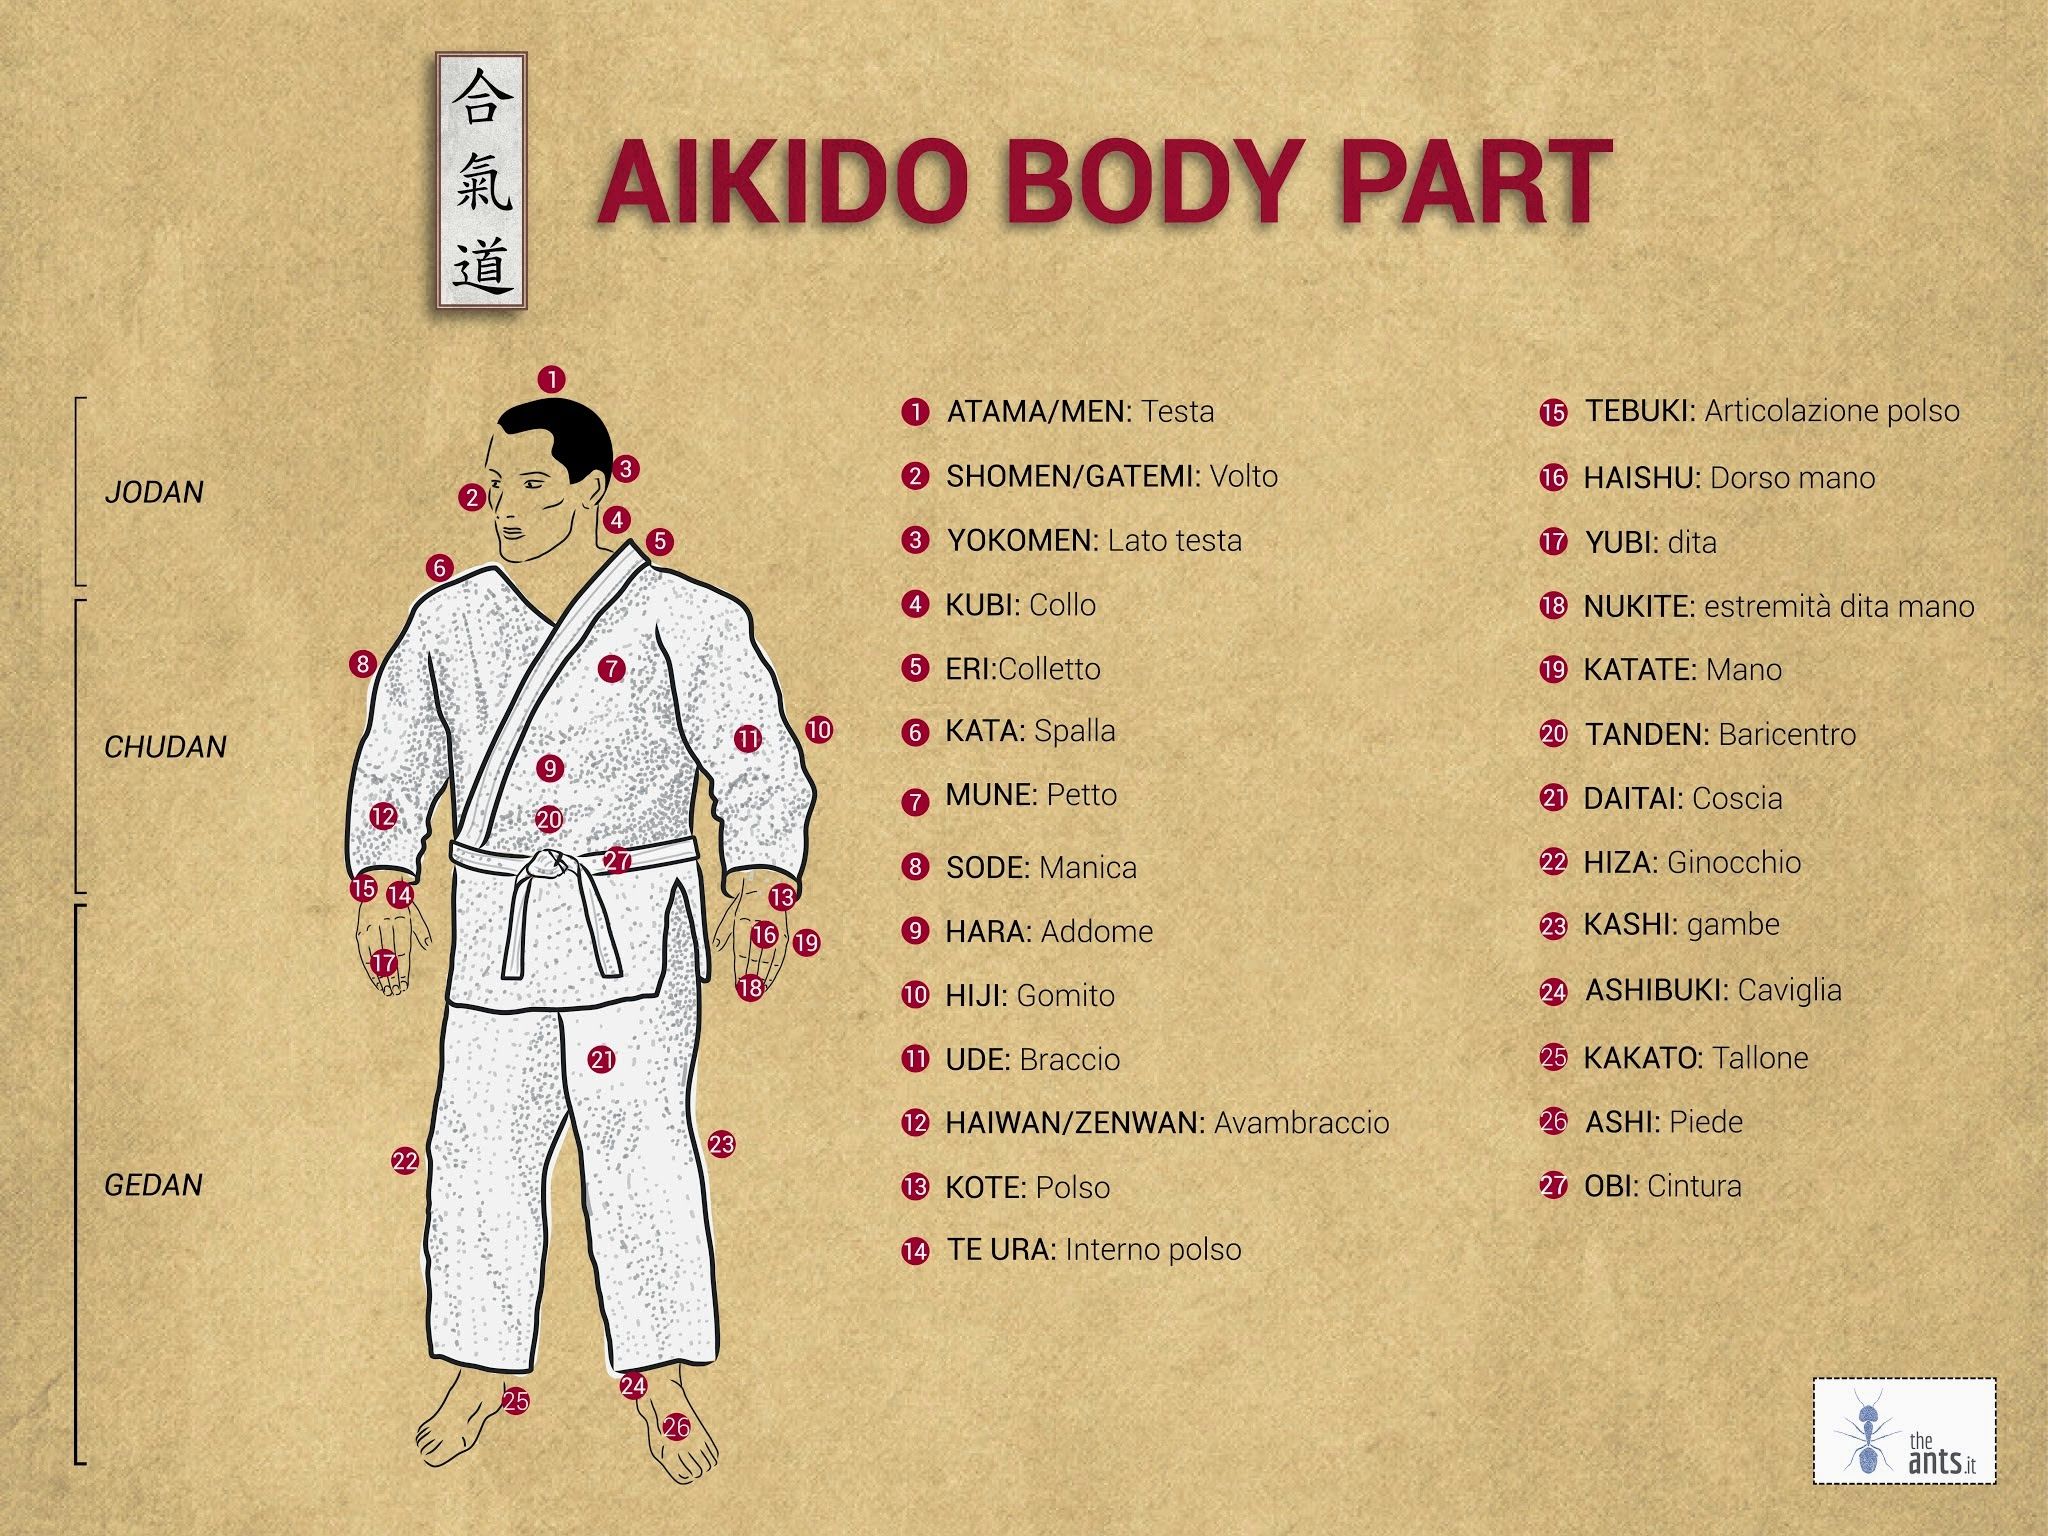 Pin on Aikido